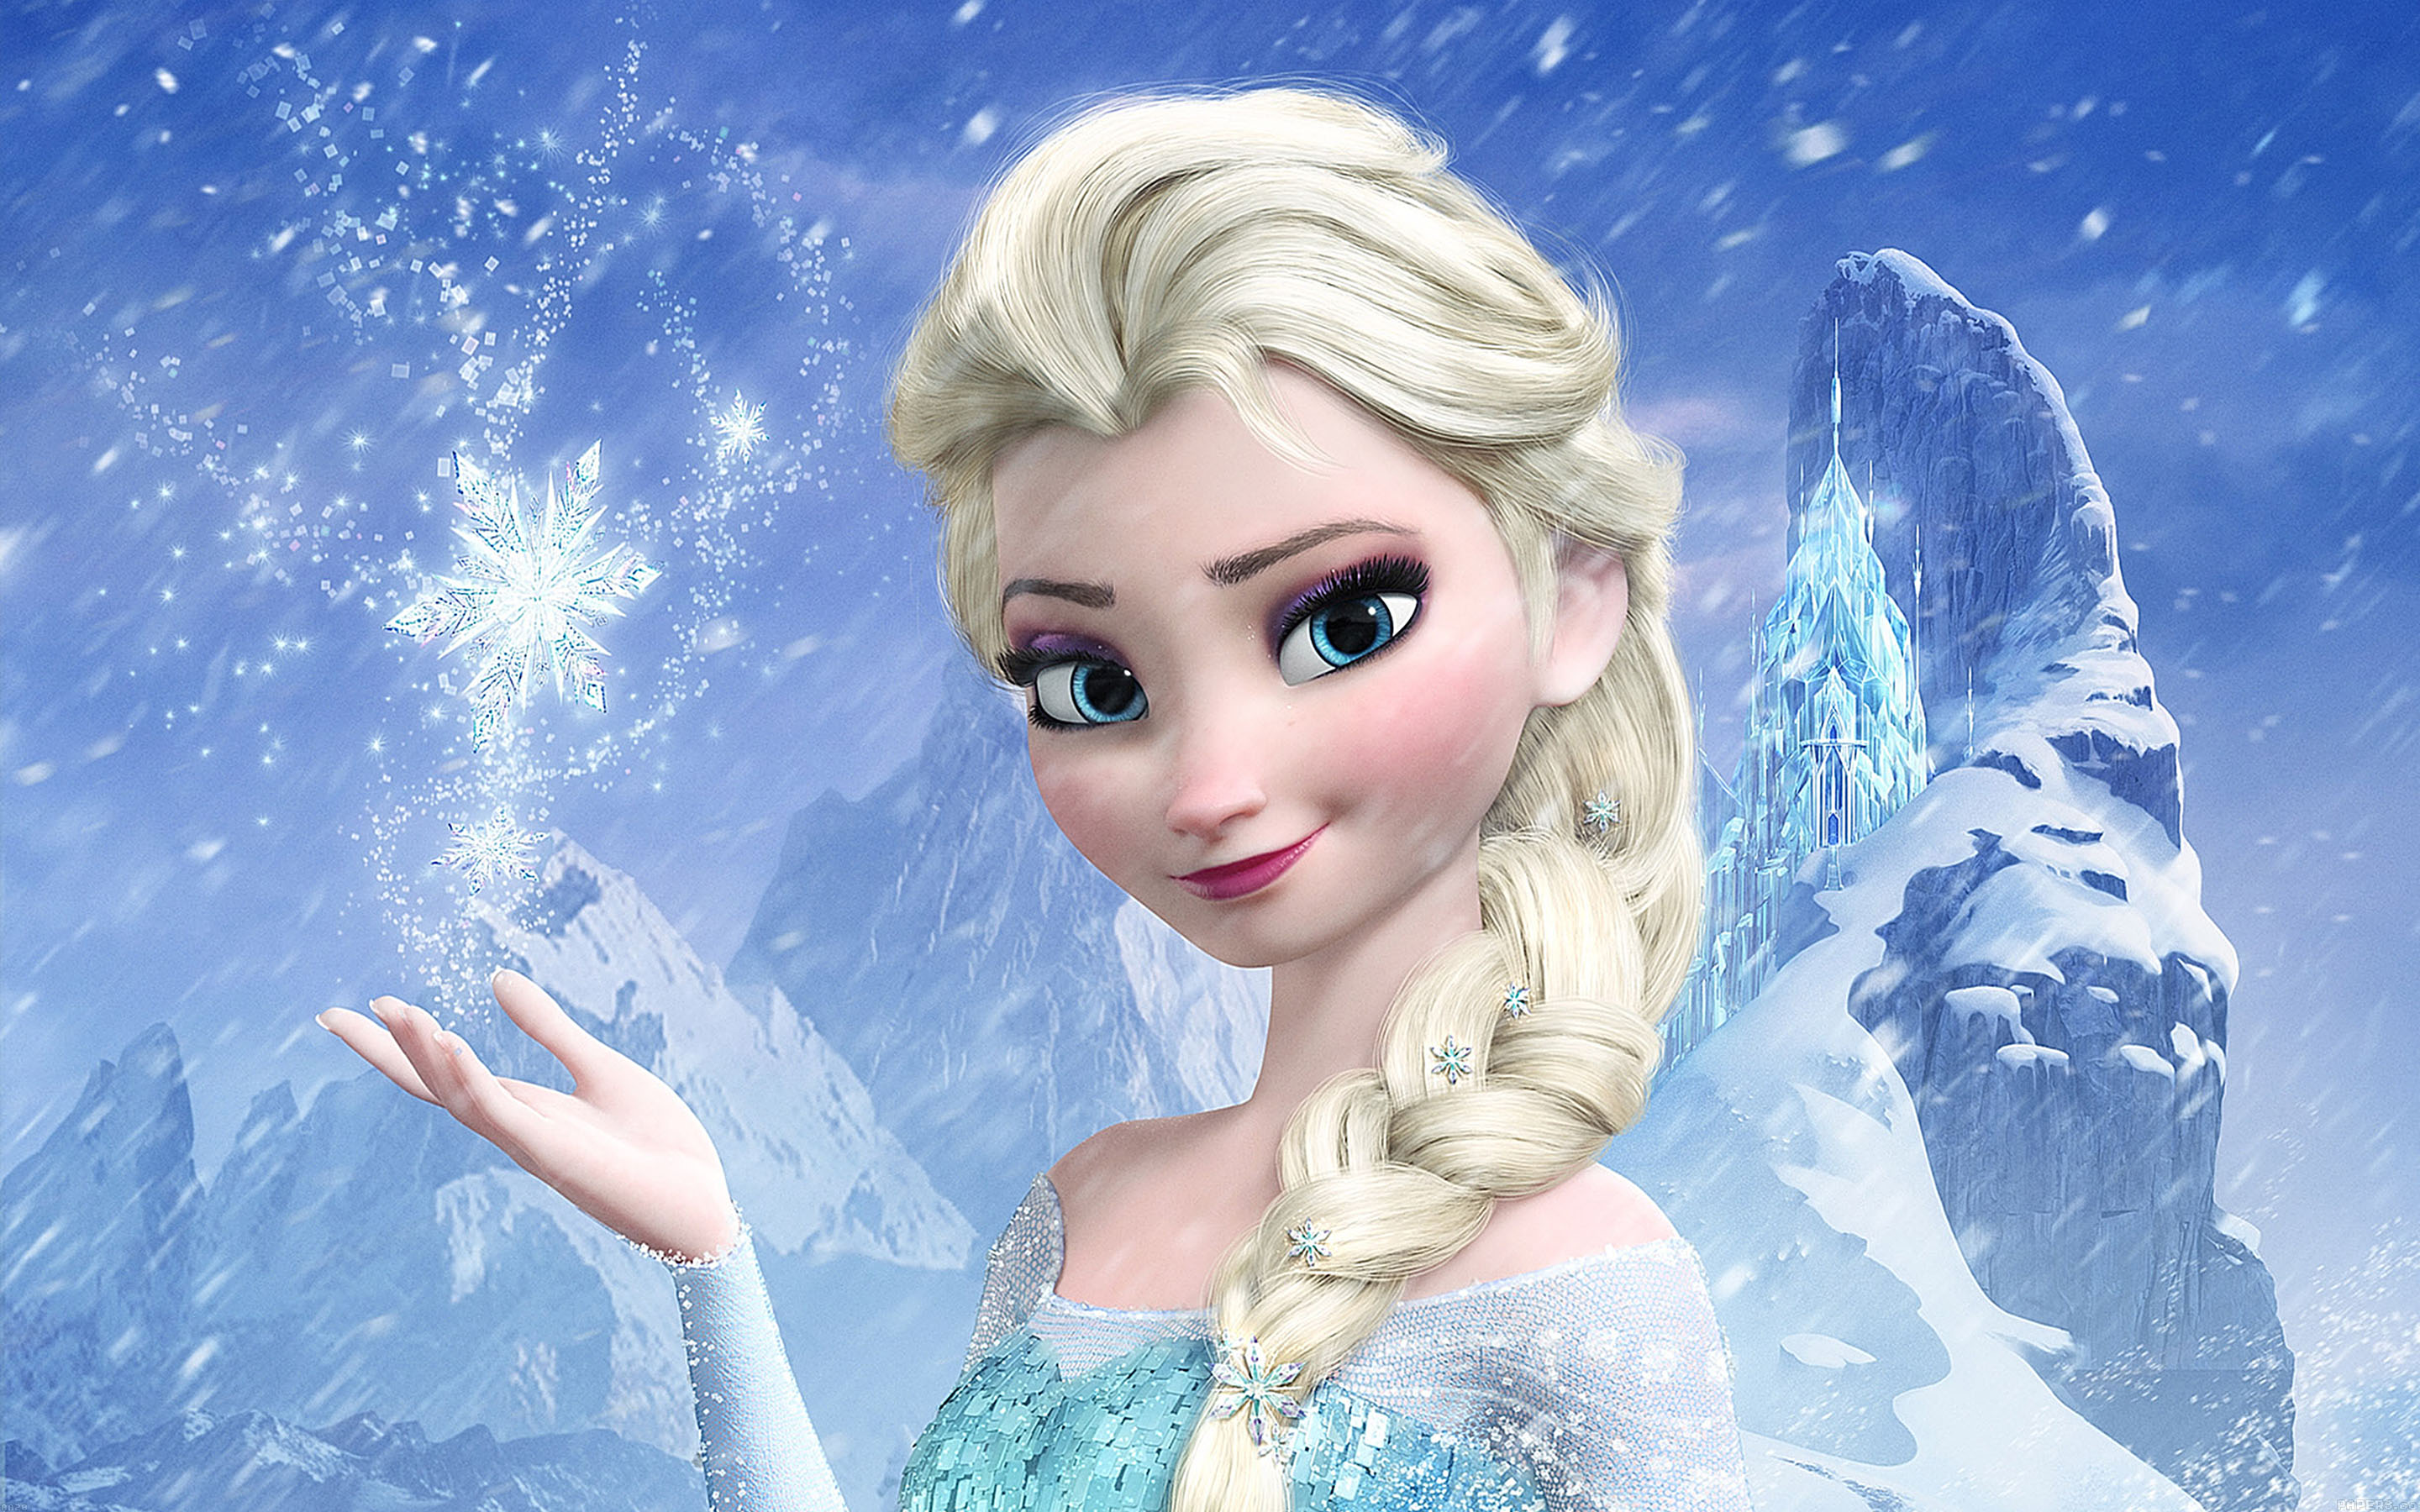 Hình Elsa, Anna Đẹp Tô Màu Cho Bé, Tranh Tô Màu Công Chúa Elsa | Vfo.Vn